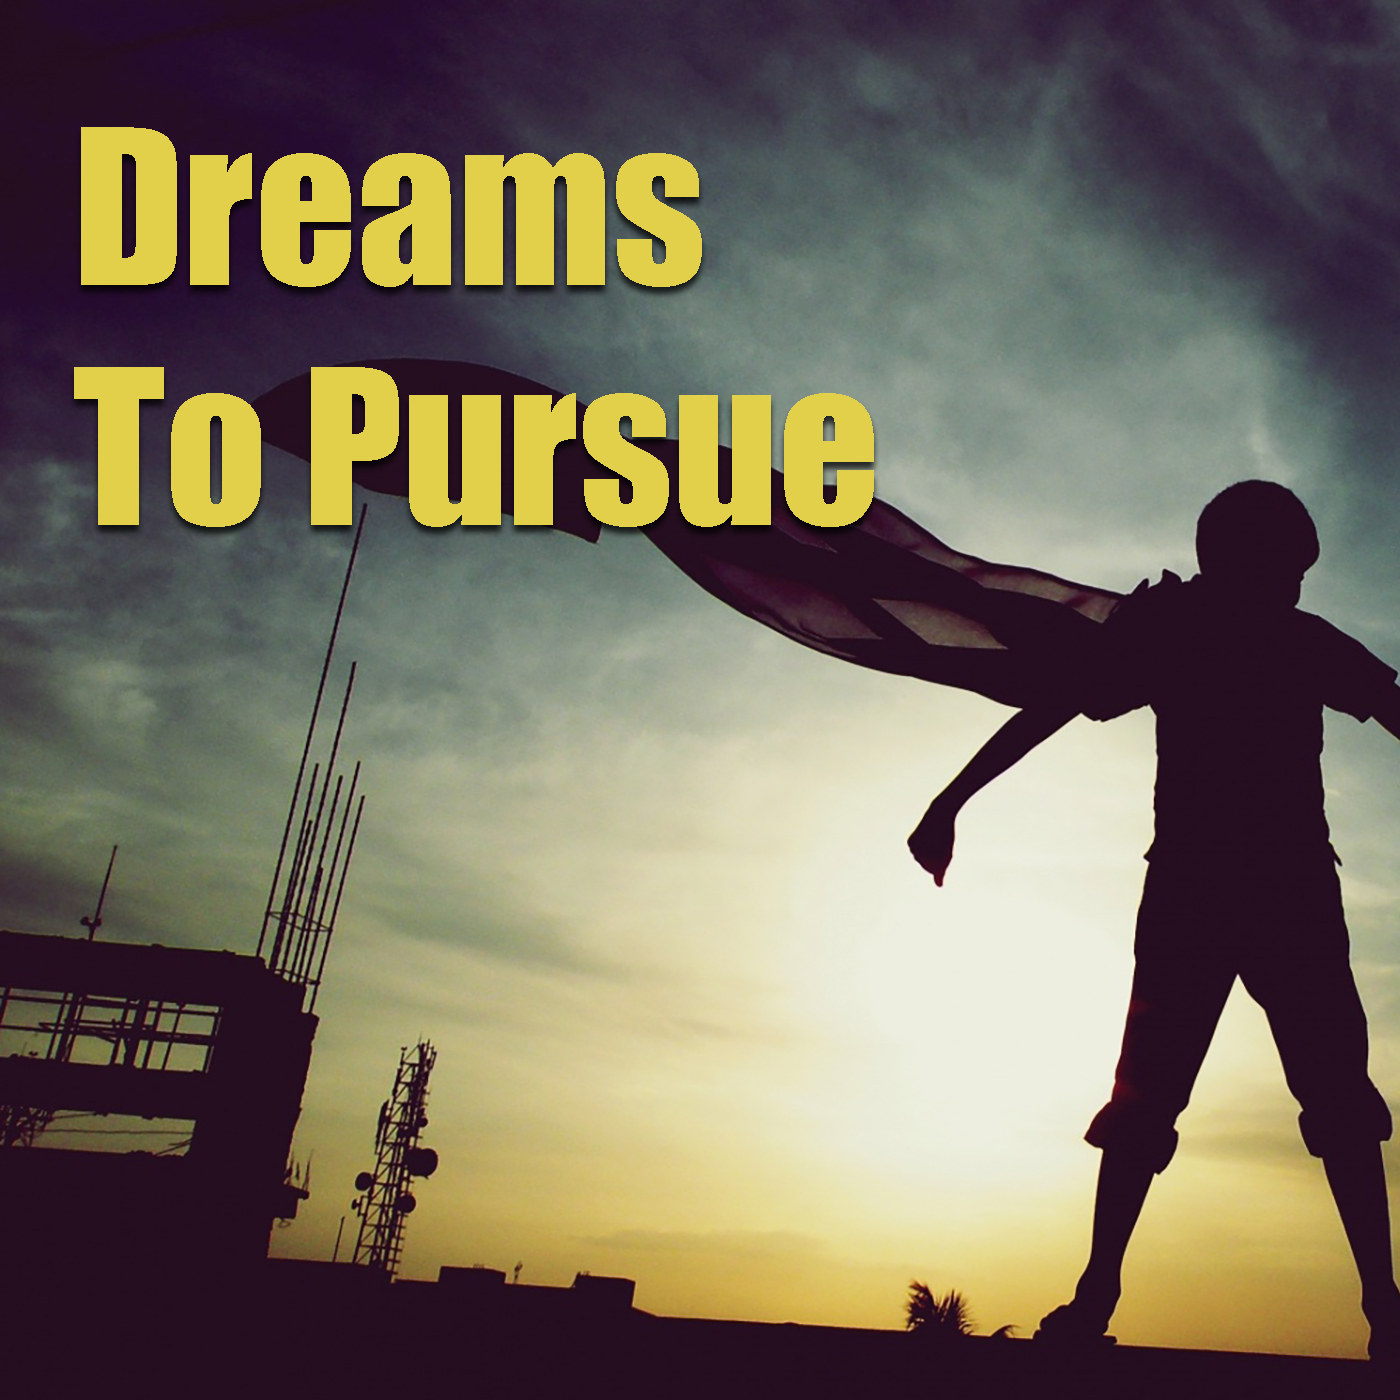 Dreams To Pursue